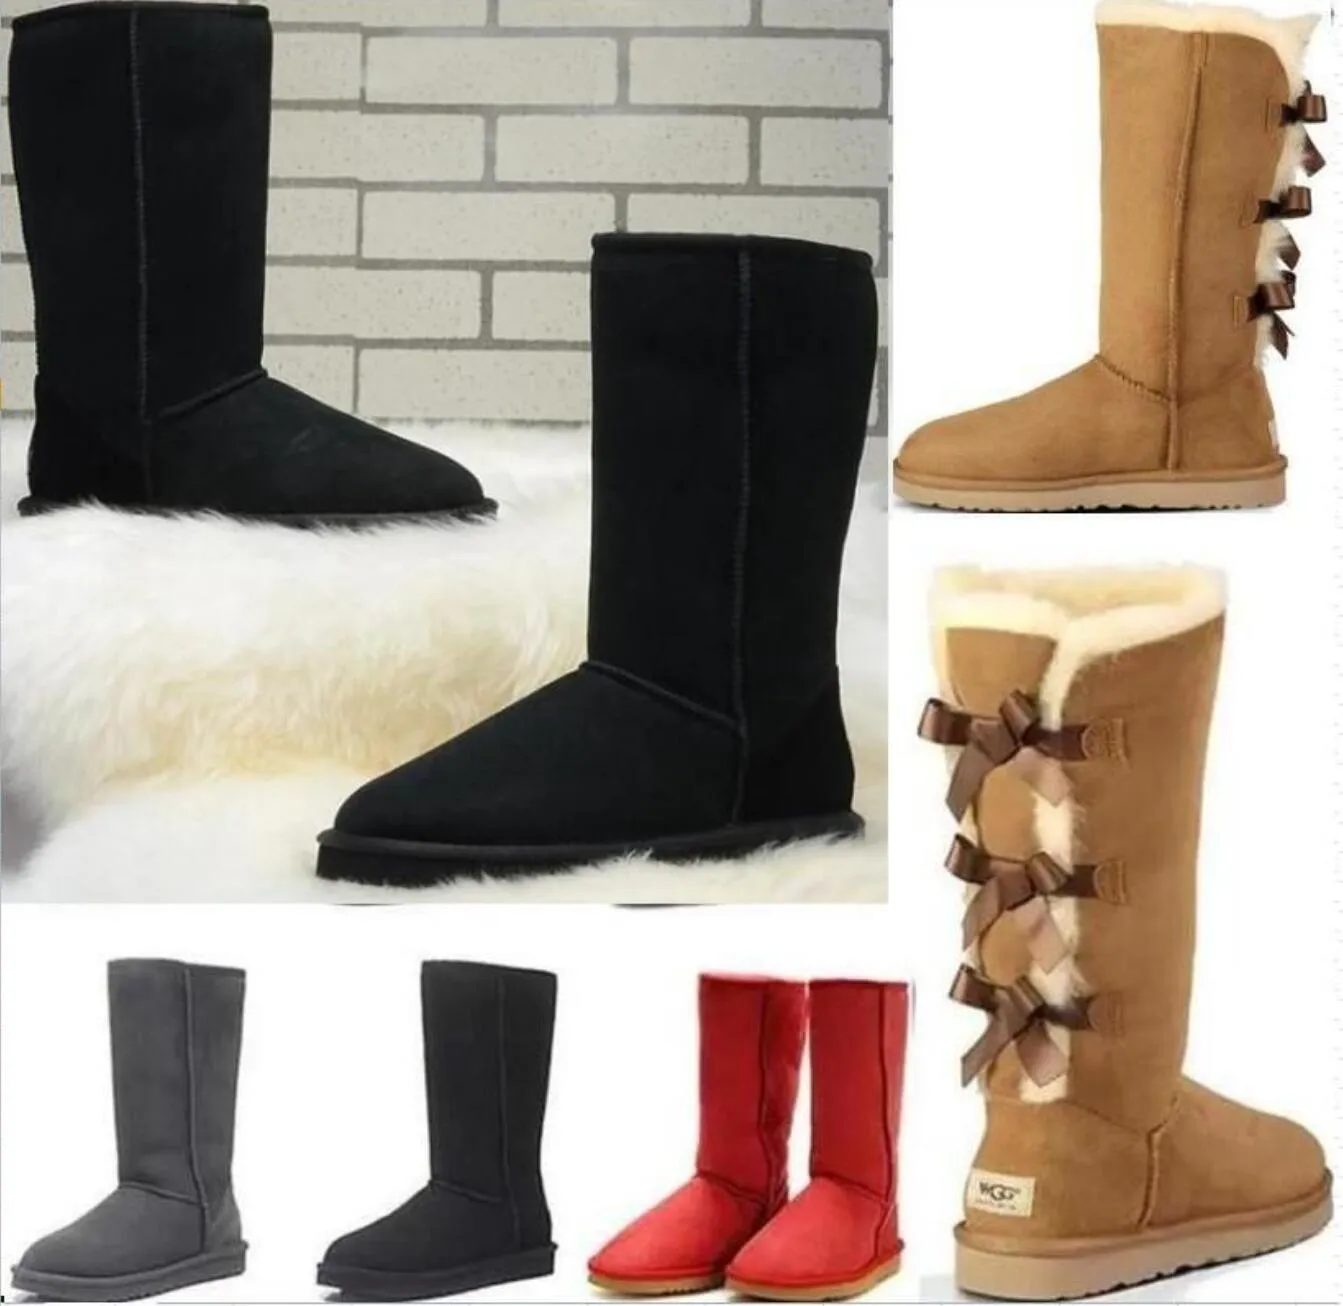 Botas altas clásicas WGG de alta calidad para mujer, zapatos de invierno cálidos de cuero para nieve de Australia para mujer, talla estadounidense 5---10 UGGitys